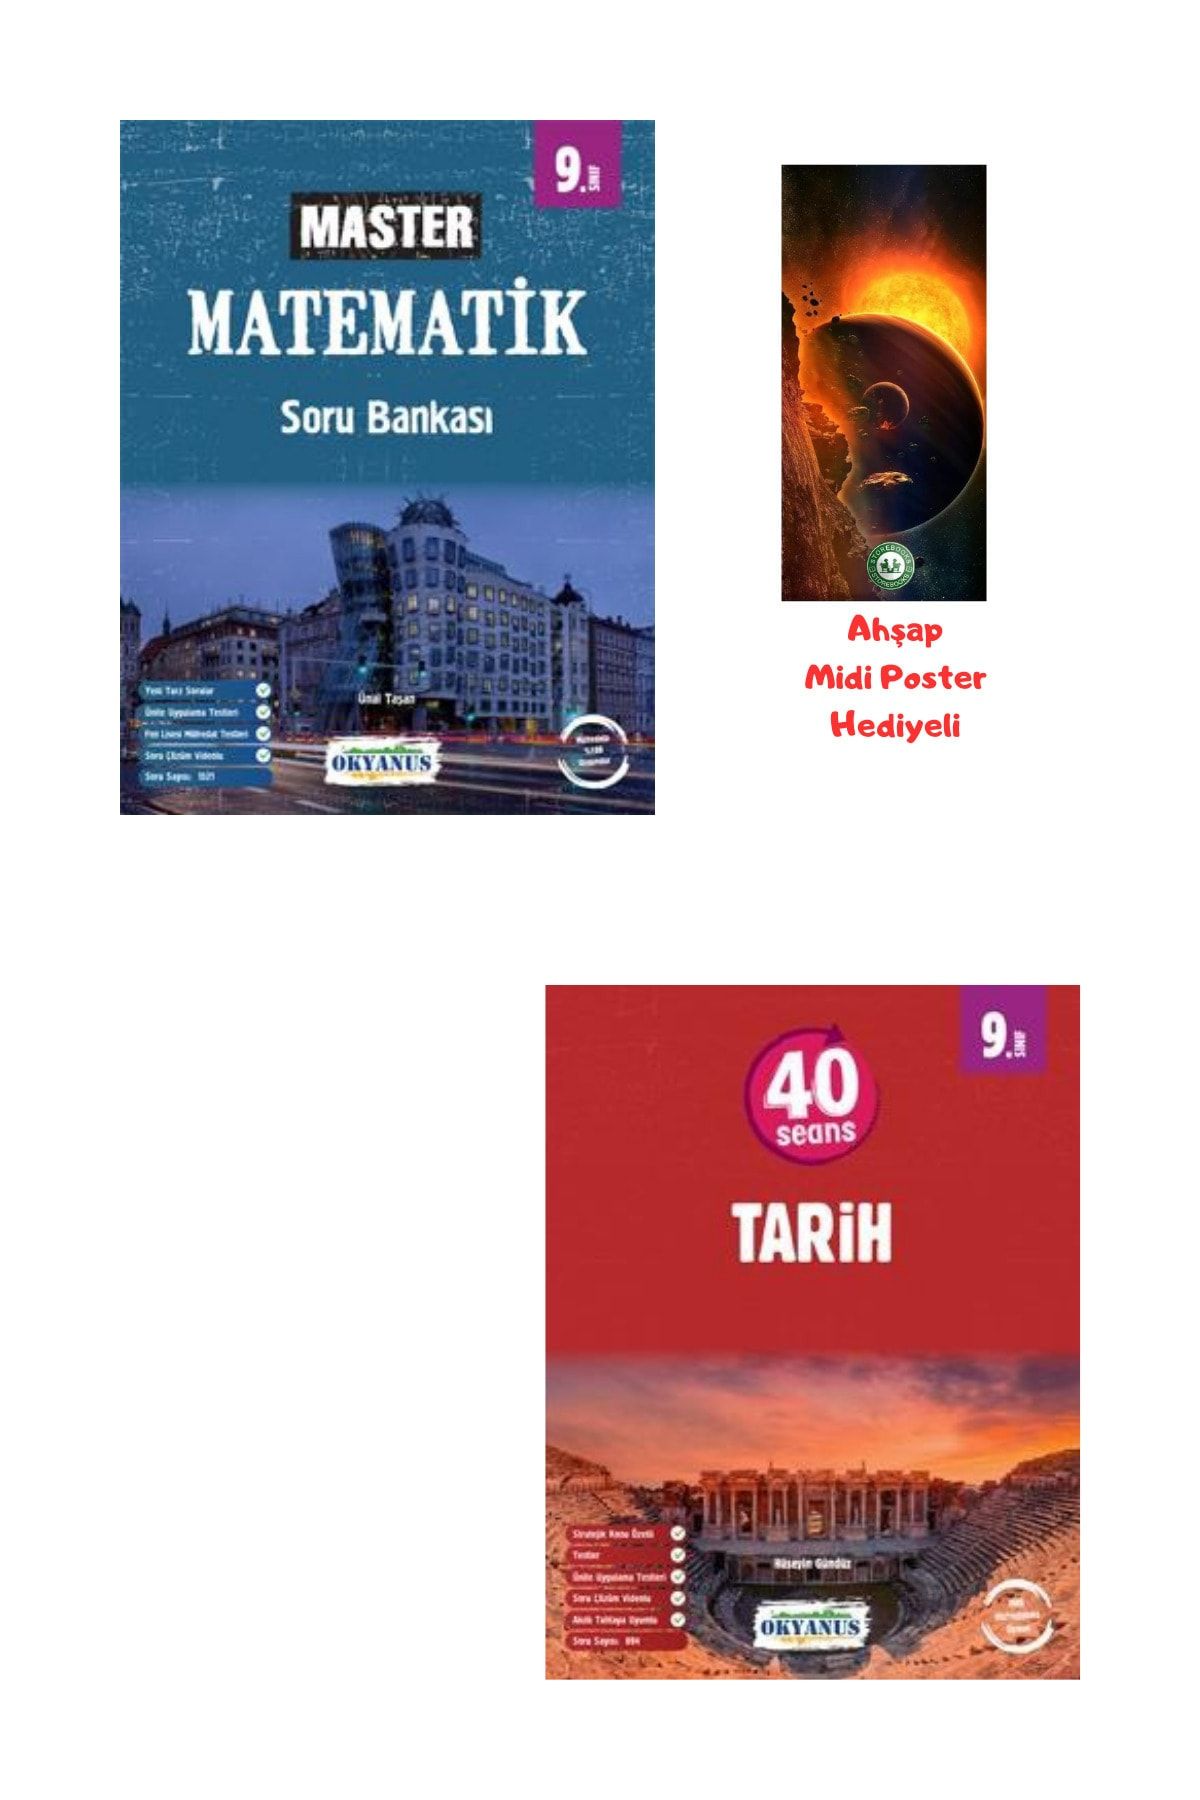 Okyanus Yayınları 9.Sınıf Master Matematik Soru Bankası ve 40 Seansta Tarih Ahşap Poster Hediyeli